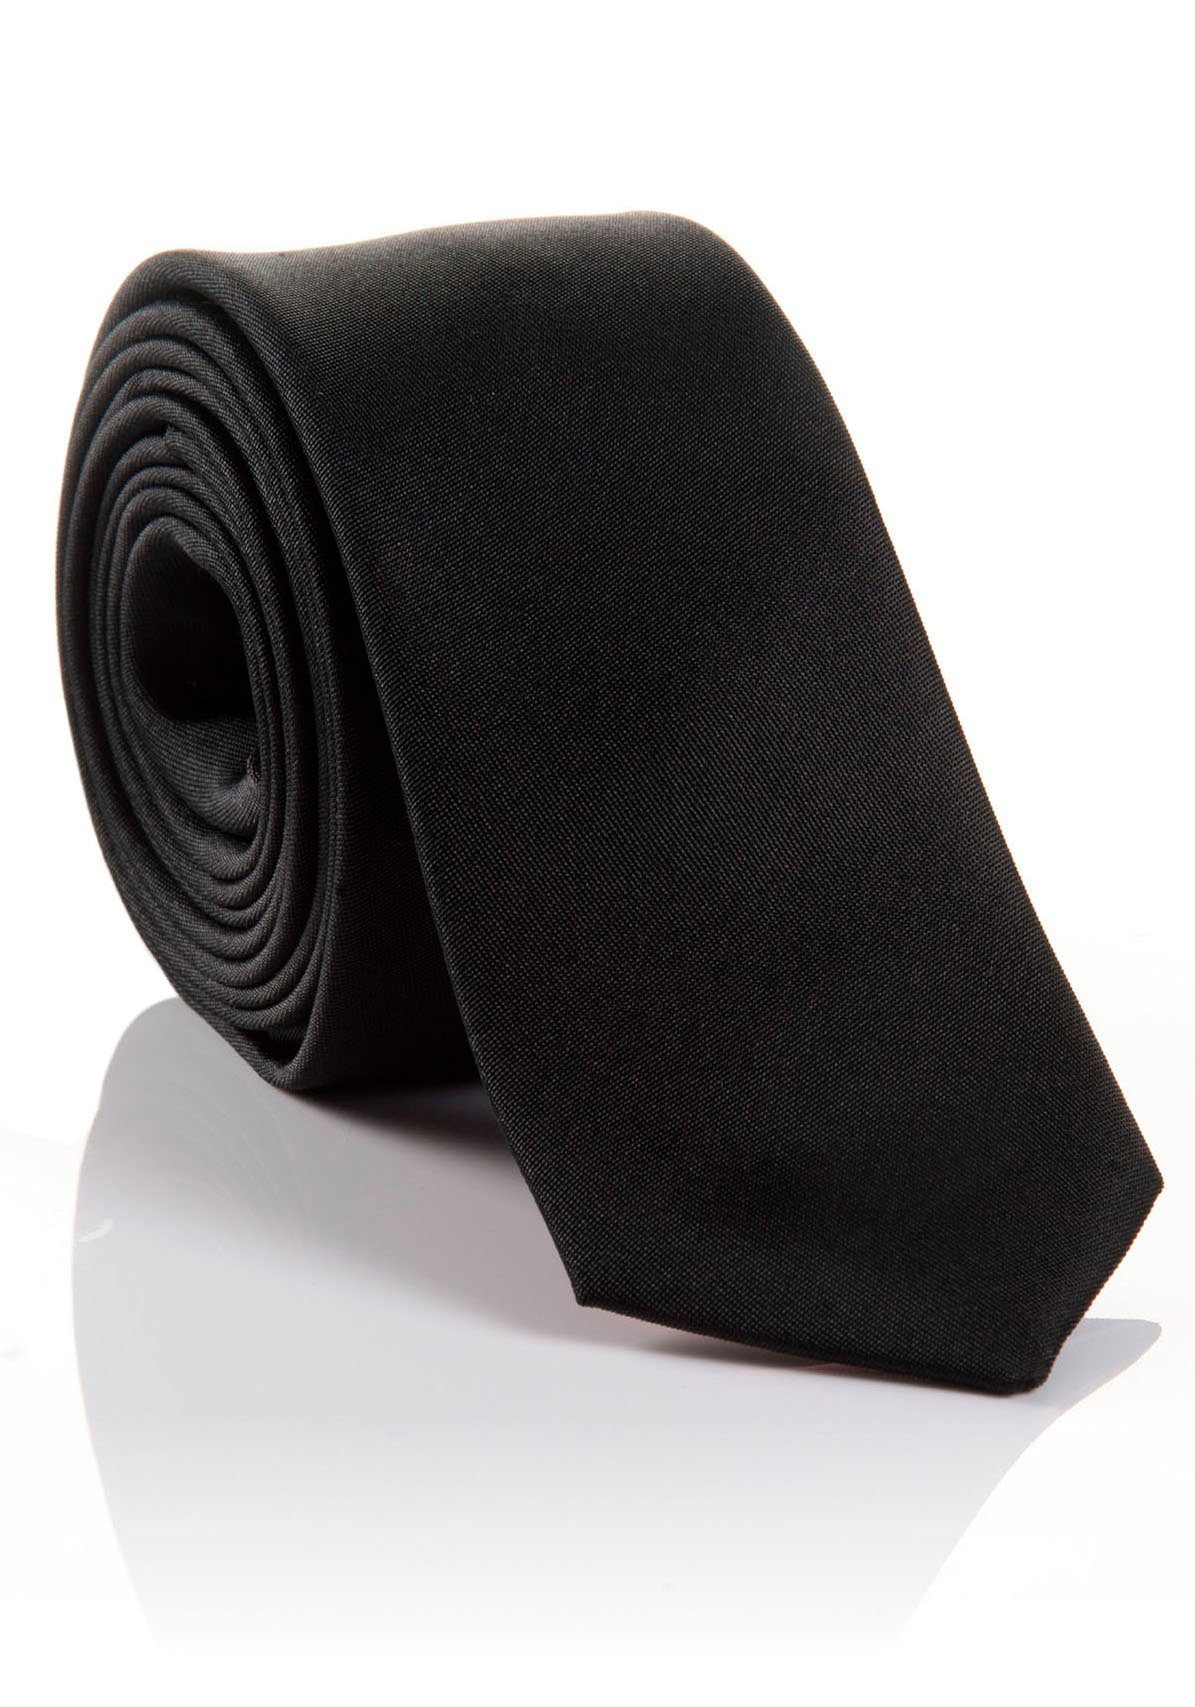 LORENZO Tragekomfort Seidenkrawatte hohem black mit MONTI Krawatte verarbeitete Hochwertig